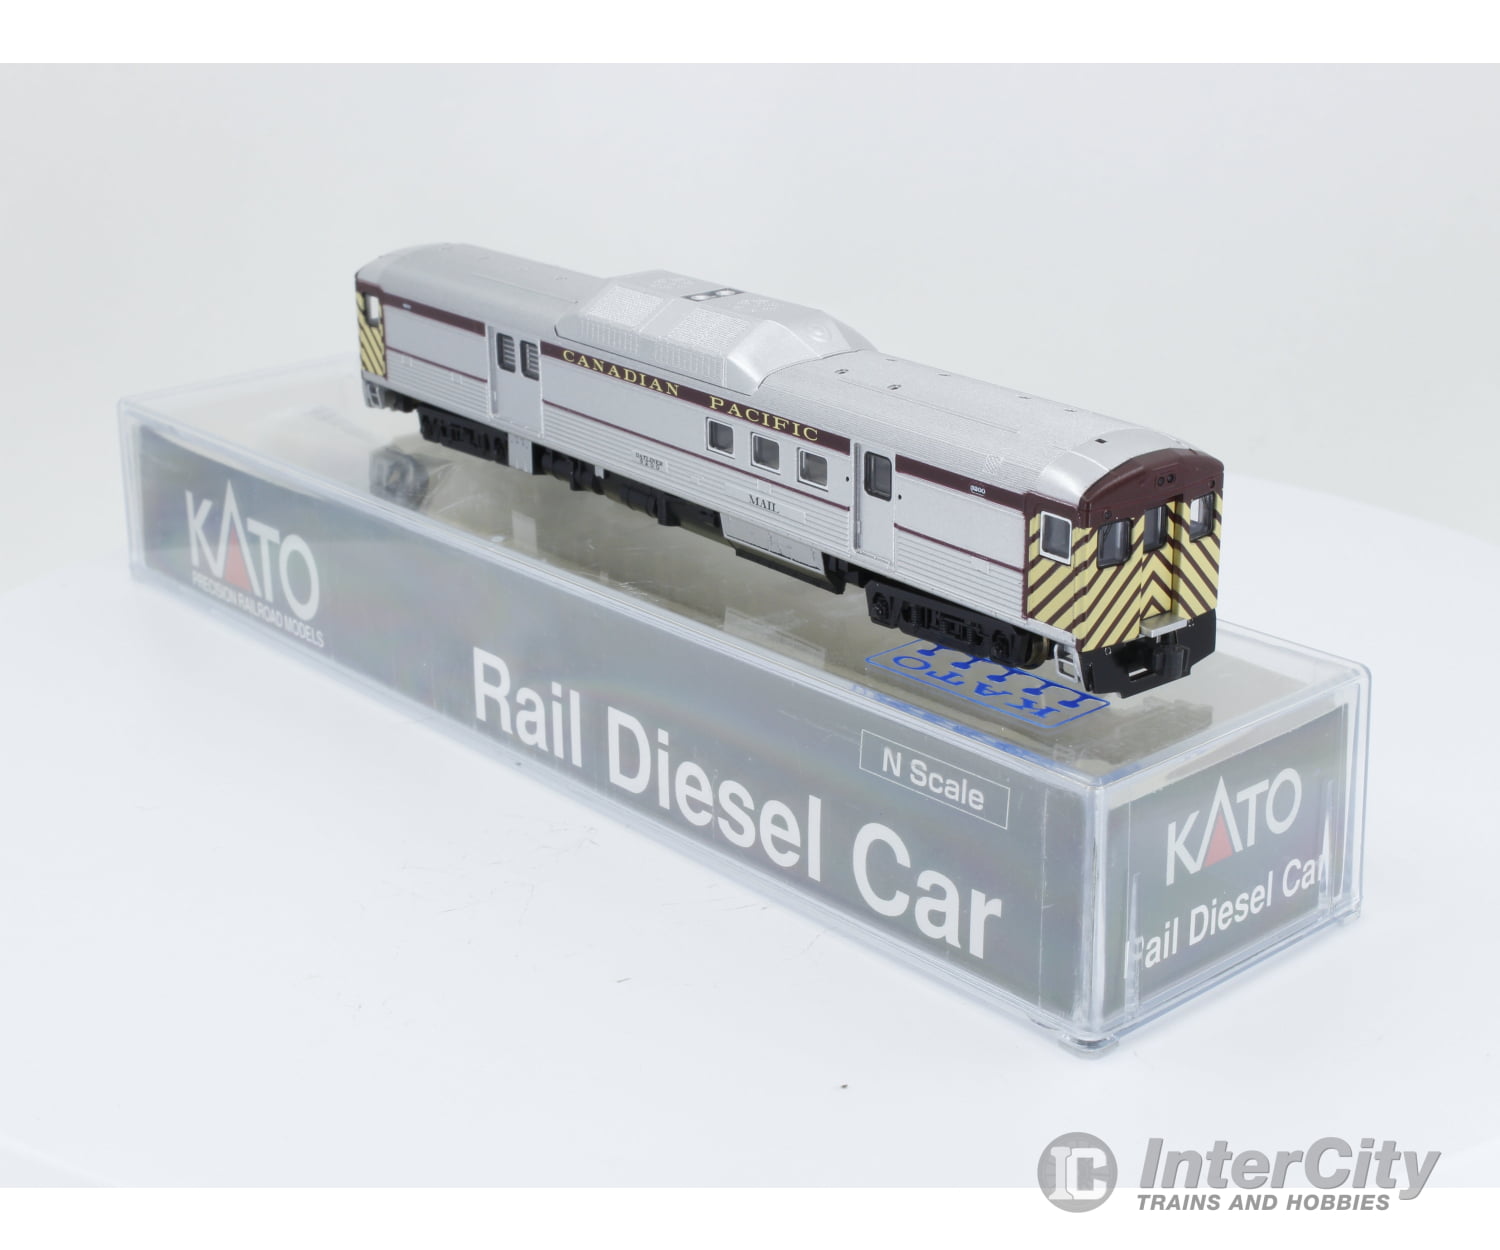 Kato 9200 N Budd Rdc Rail Diesel Car Canadian Pacific (Cp) Passenger Cars